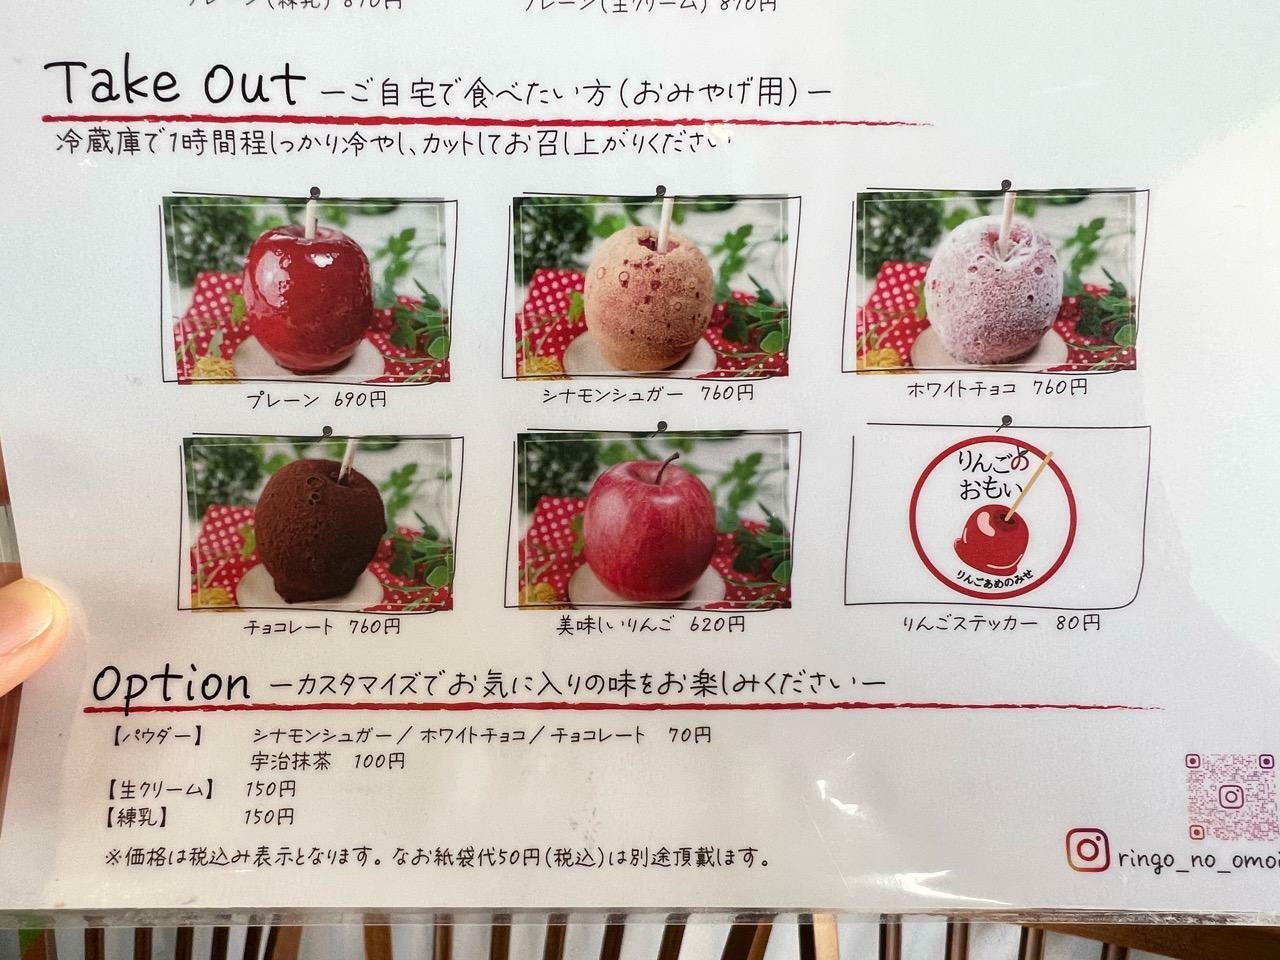 りんごあめのみせ「りんごのおもい 豊田店」メニュー